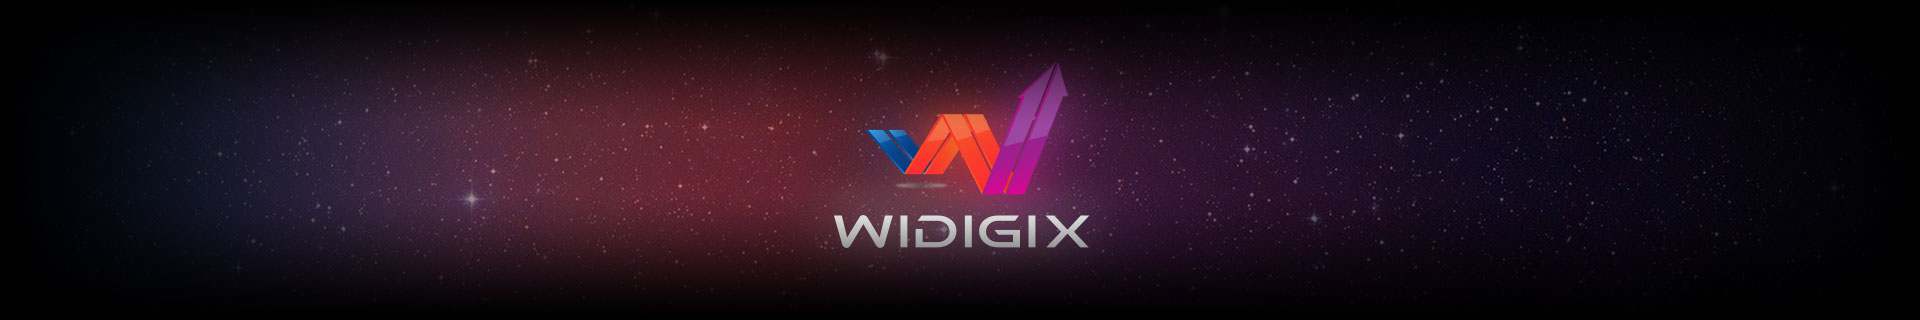 EiV Widigix3 Partner banner min